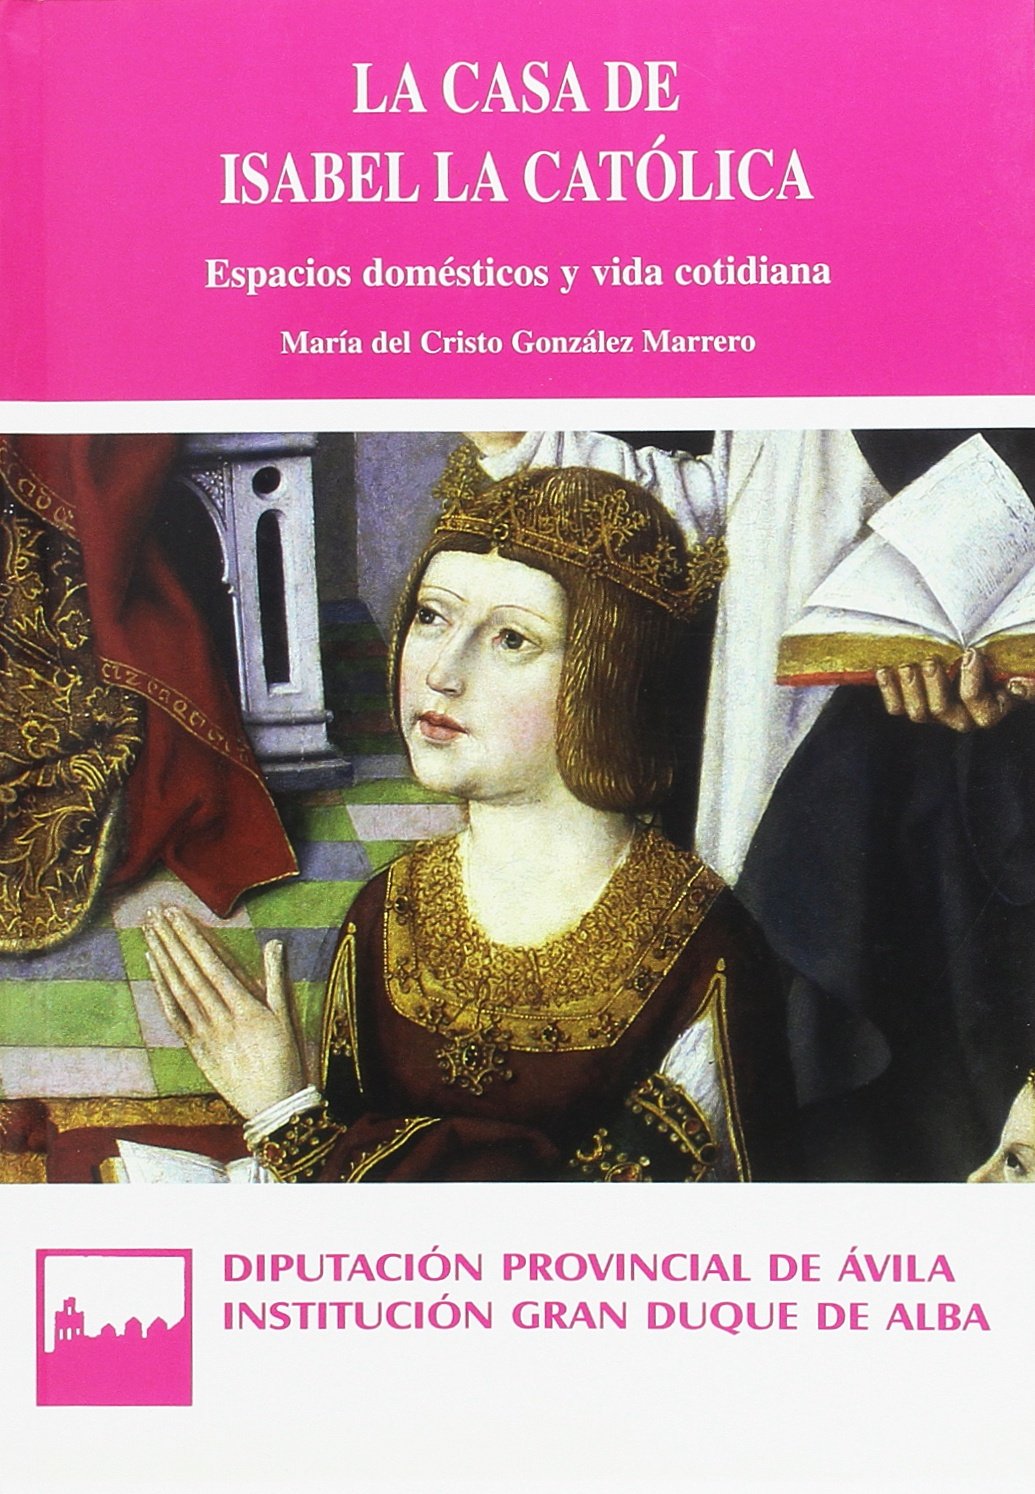 Imagen de portada del libro La casa de Isabel la Católica